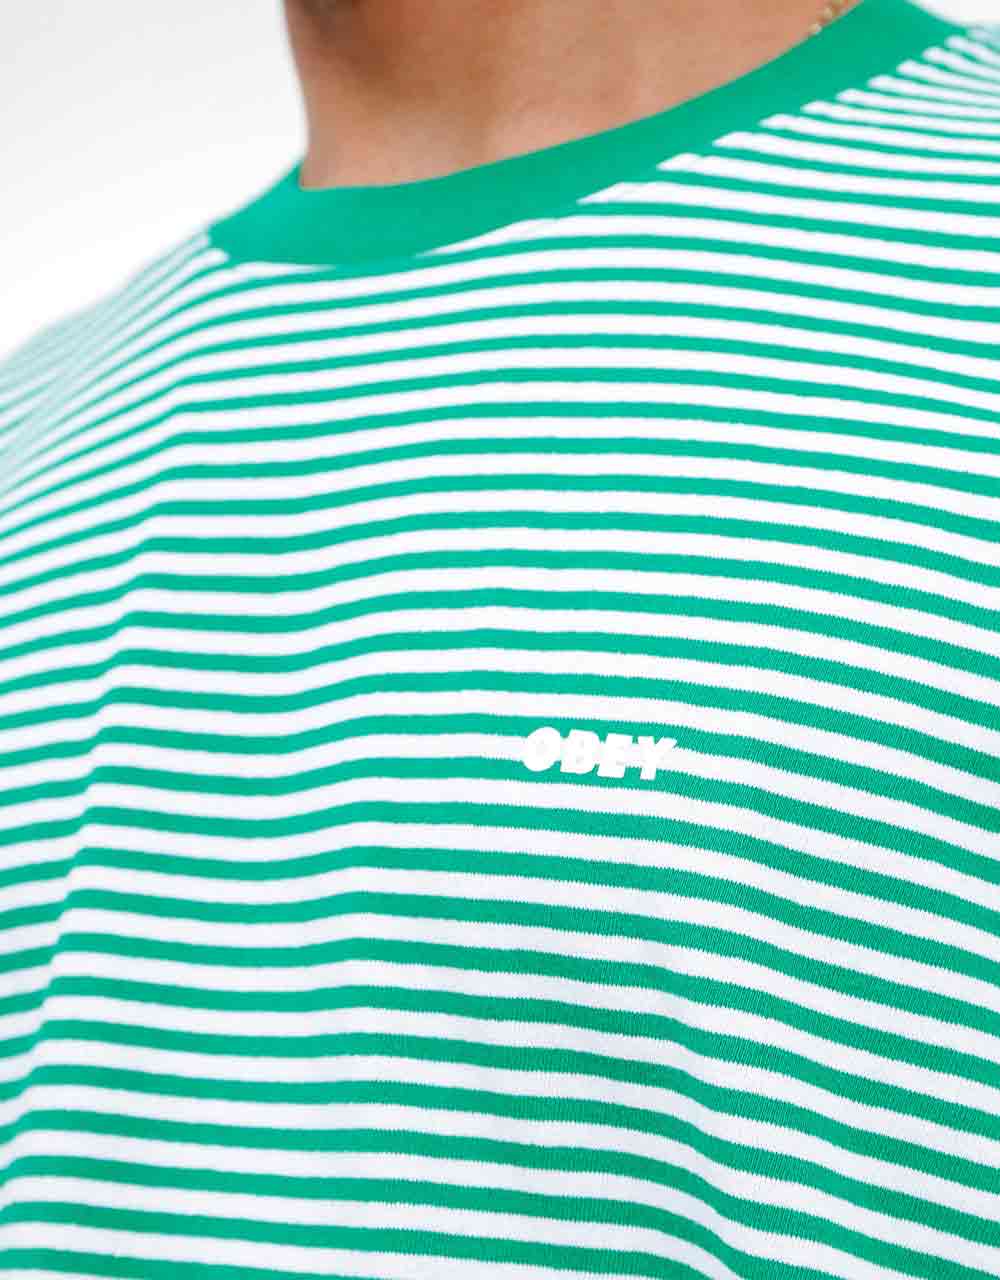 Obey Ideals Organic Stripe T-Shirt - Vital Green Multi